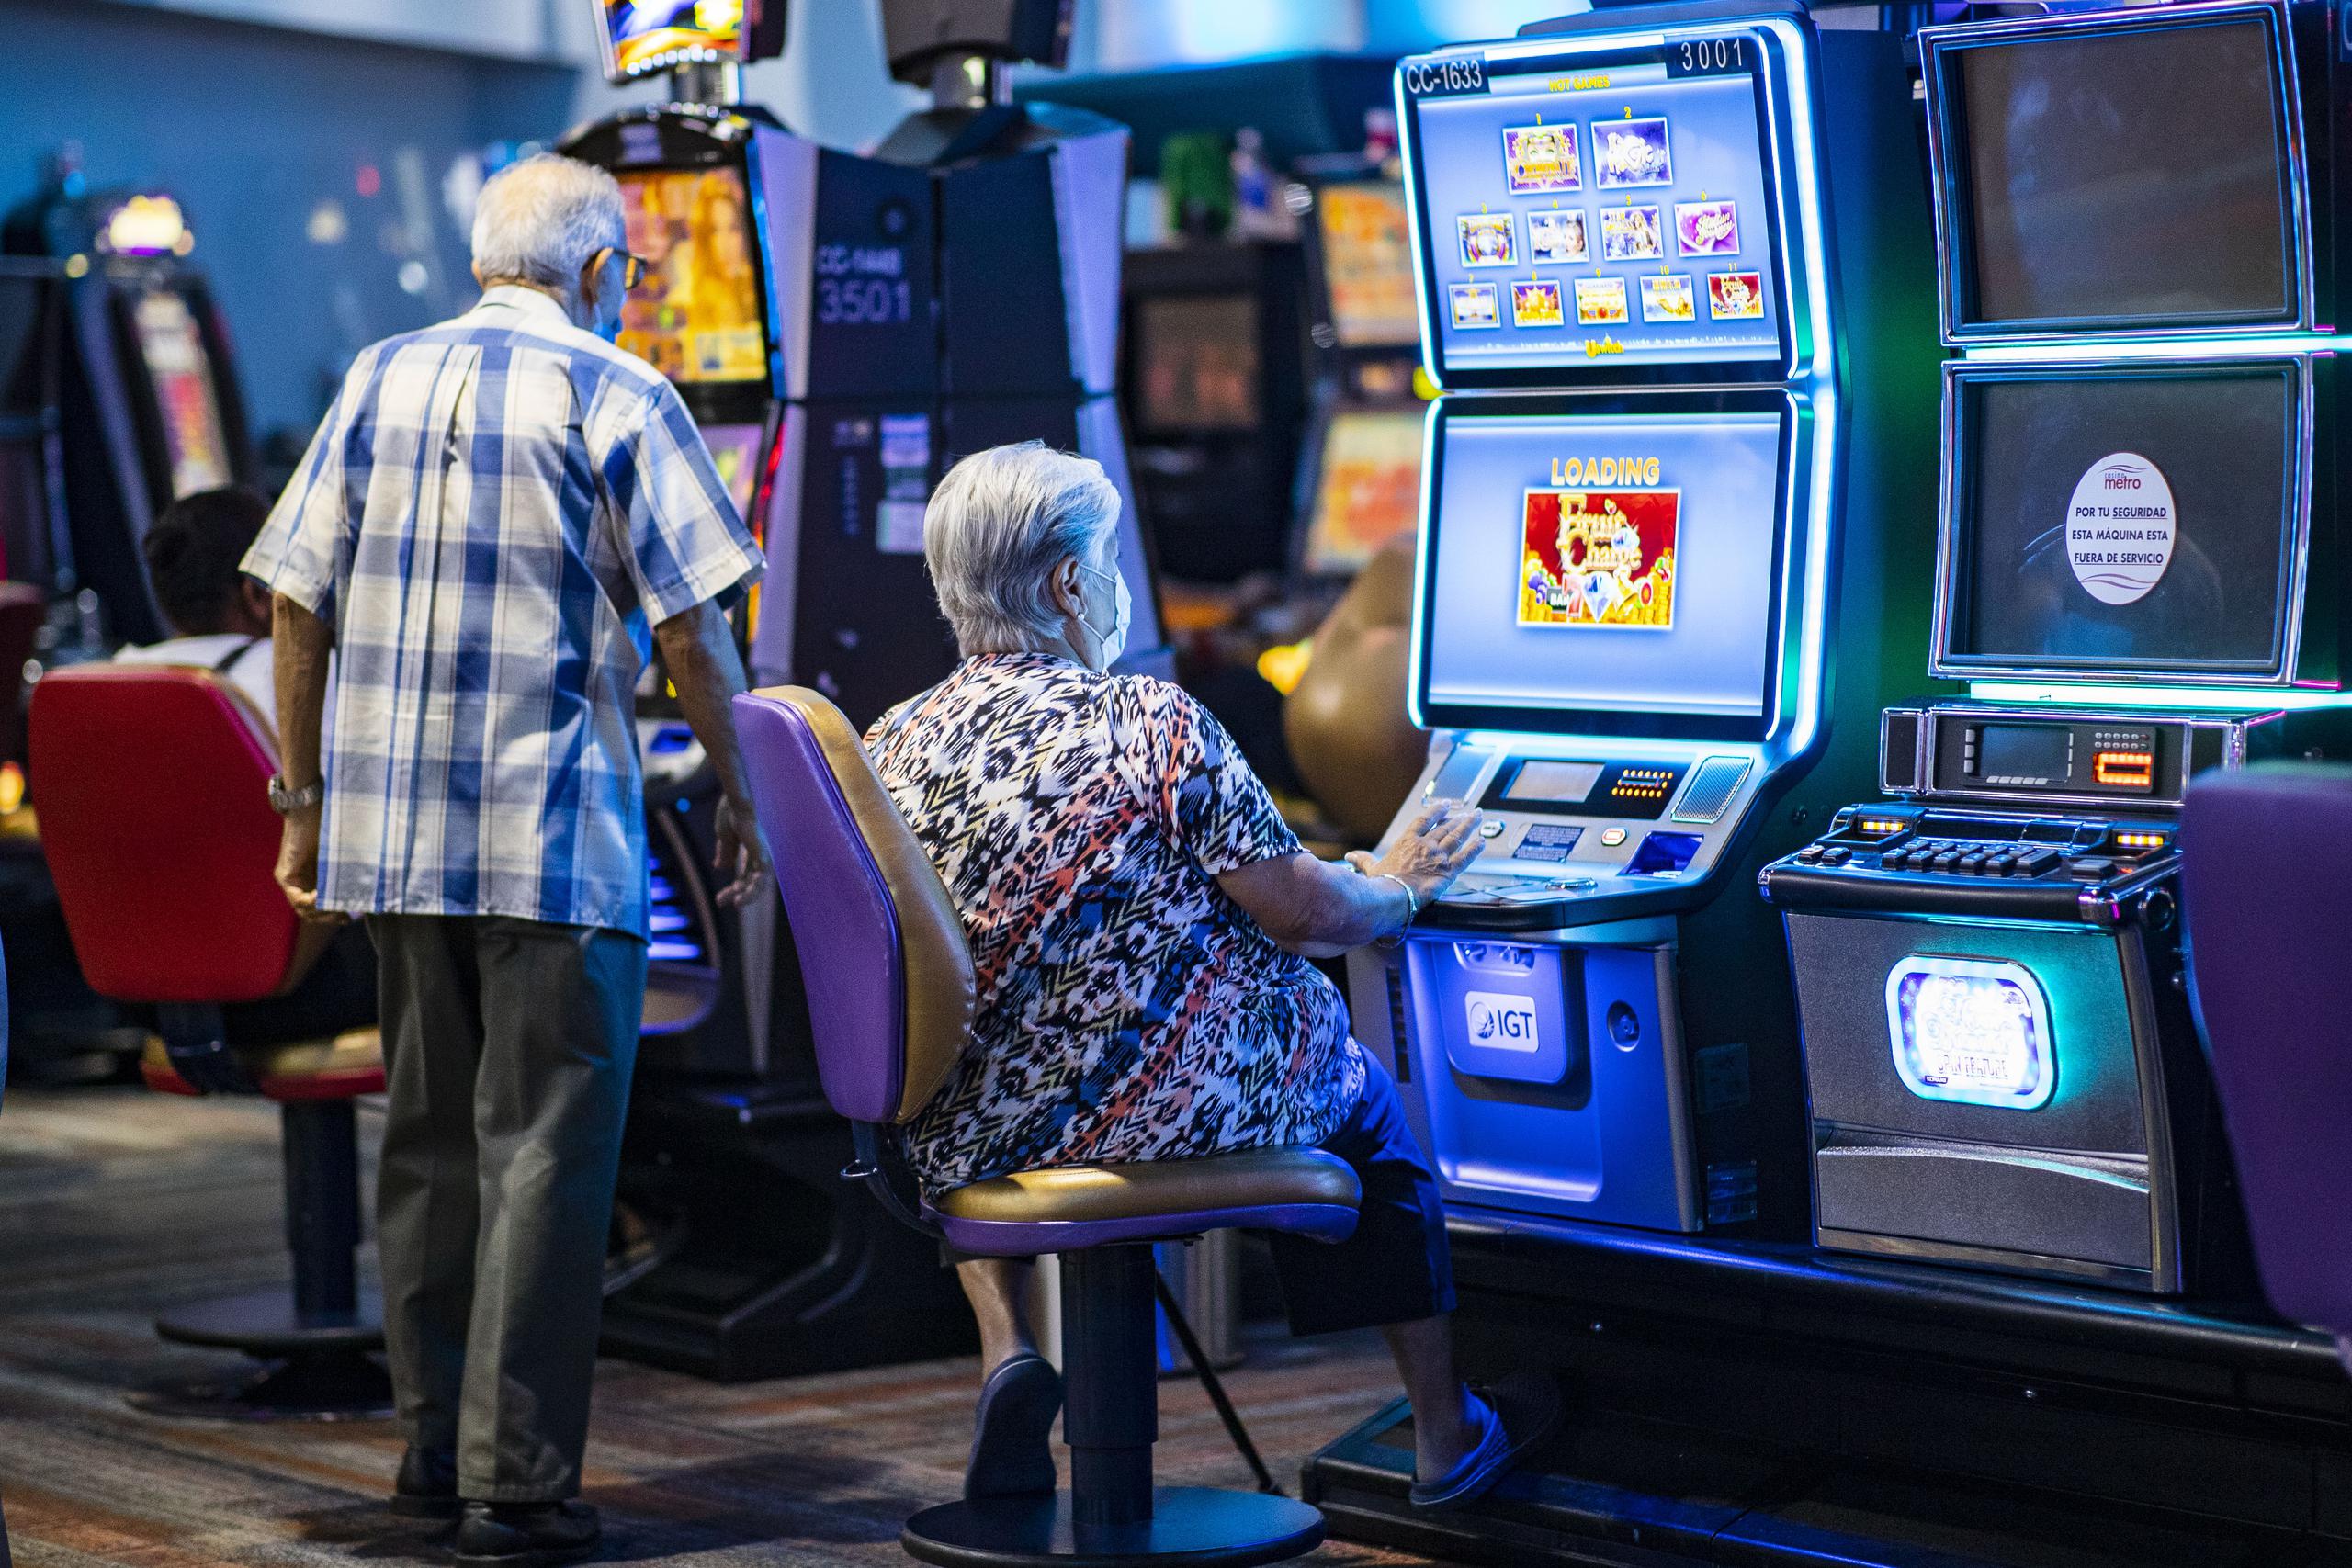 Aunque en el casino había personas de todas las generaciones, era evidente que el flujo mayor era de personas de edad avanzada.